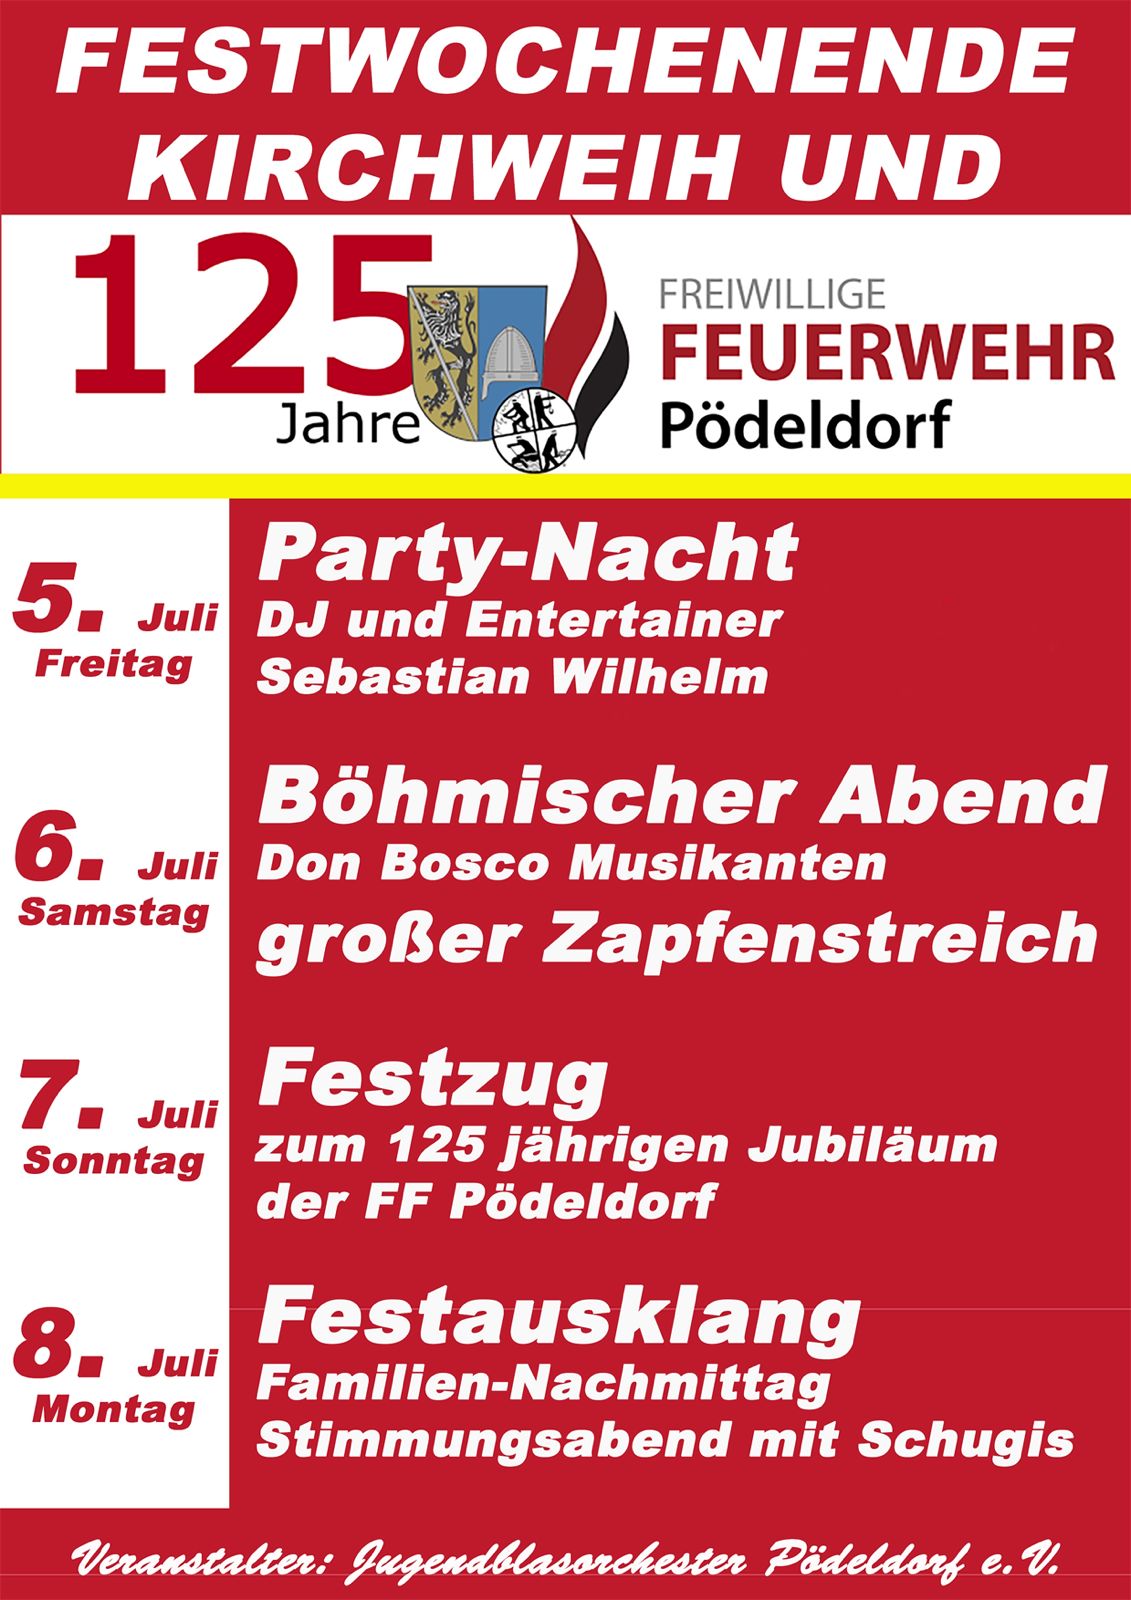 Festwochenende und Kirchweih 125 Jahre Feuerwehr Pödeldorf